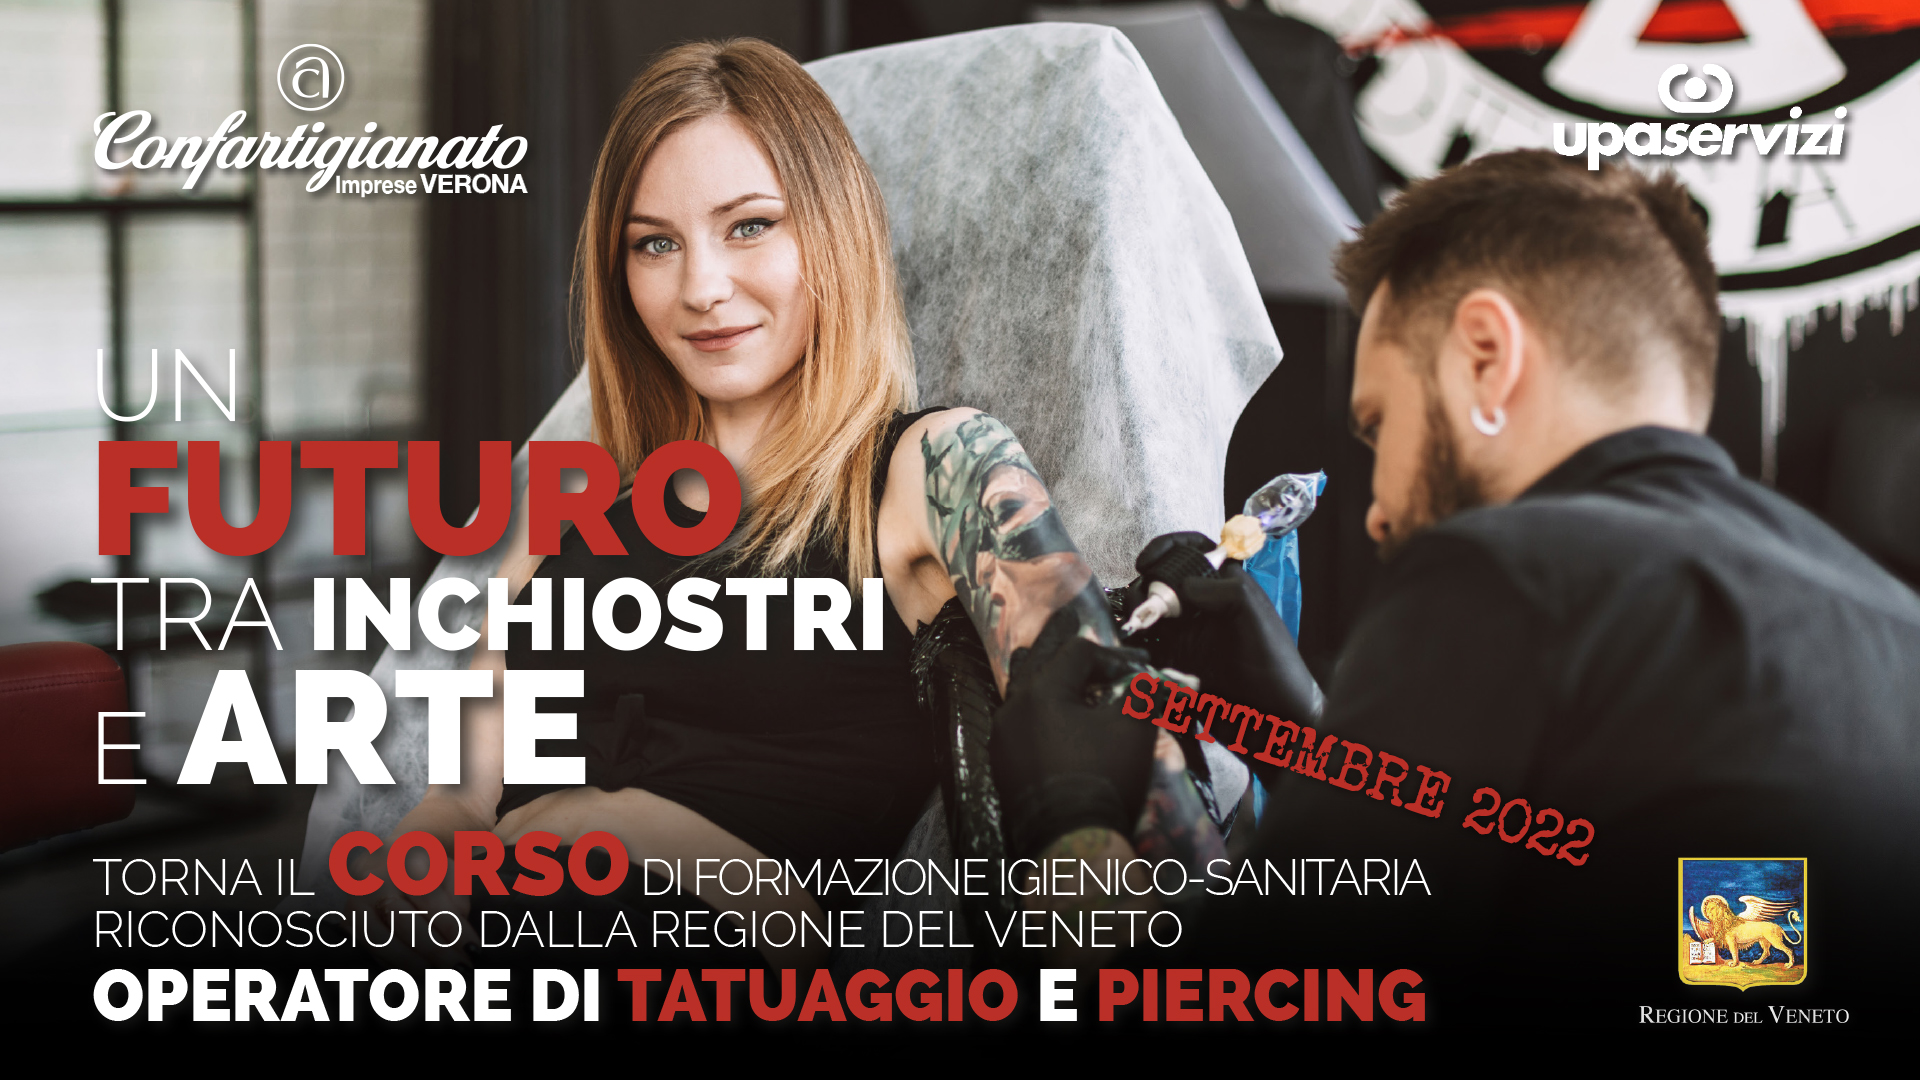 TATUAGGI & PIERCING – Torna il corso a riconoscimento regionale per l’abilitazione all’attività di tatuaggio e piercing. Crediti formativi per estetiste. Iscriviti entro il 31 agosto